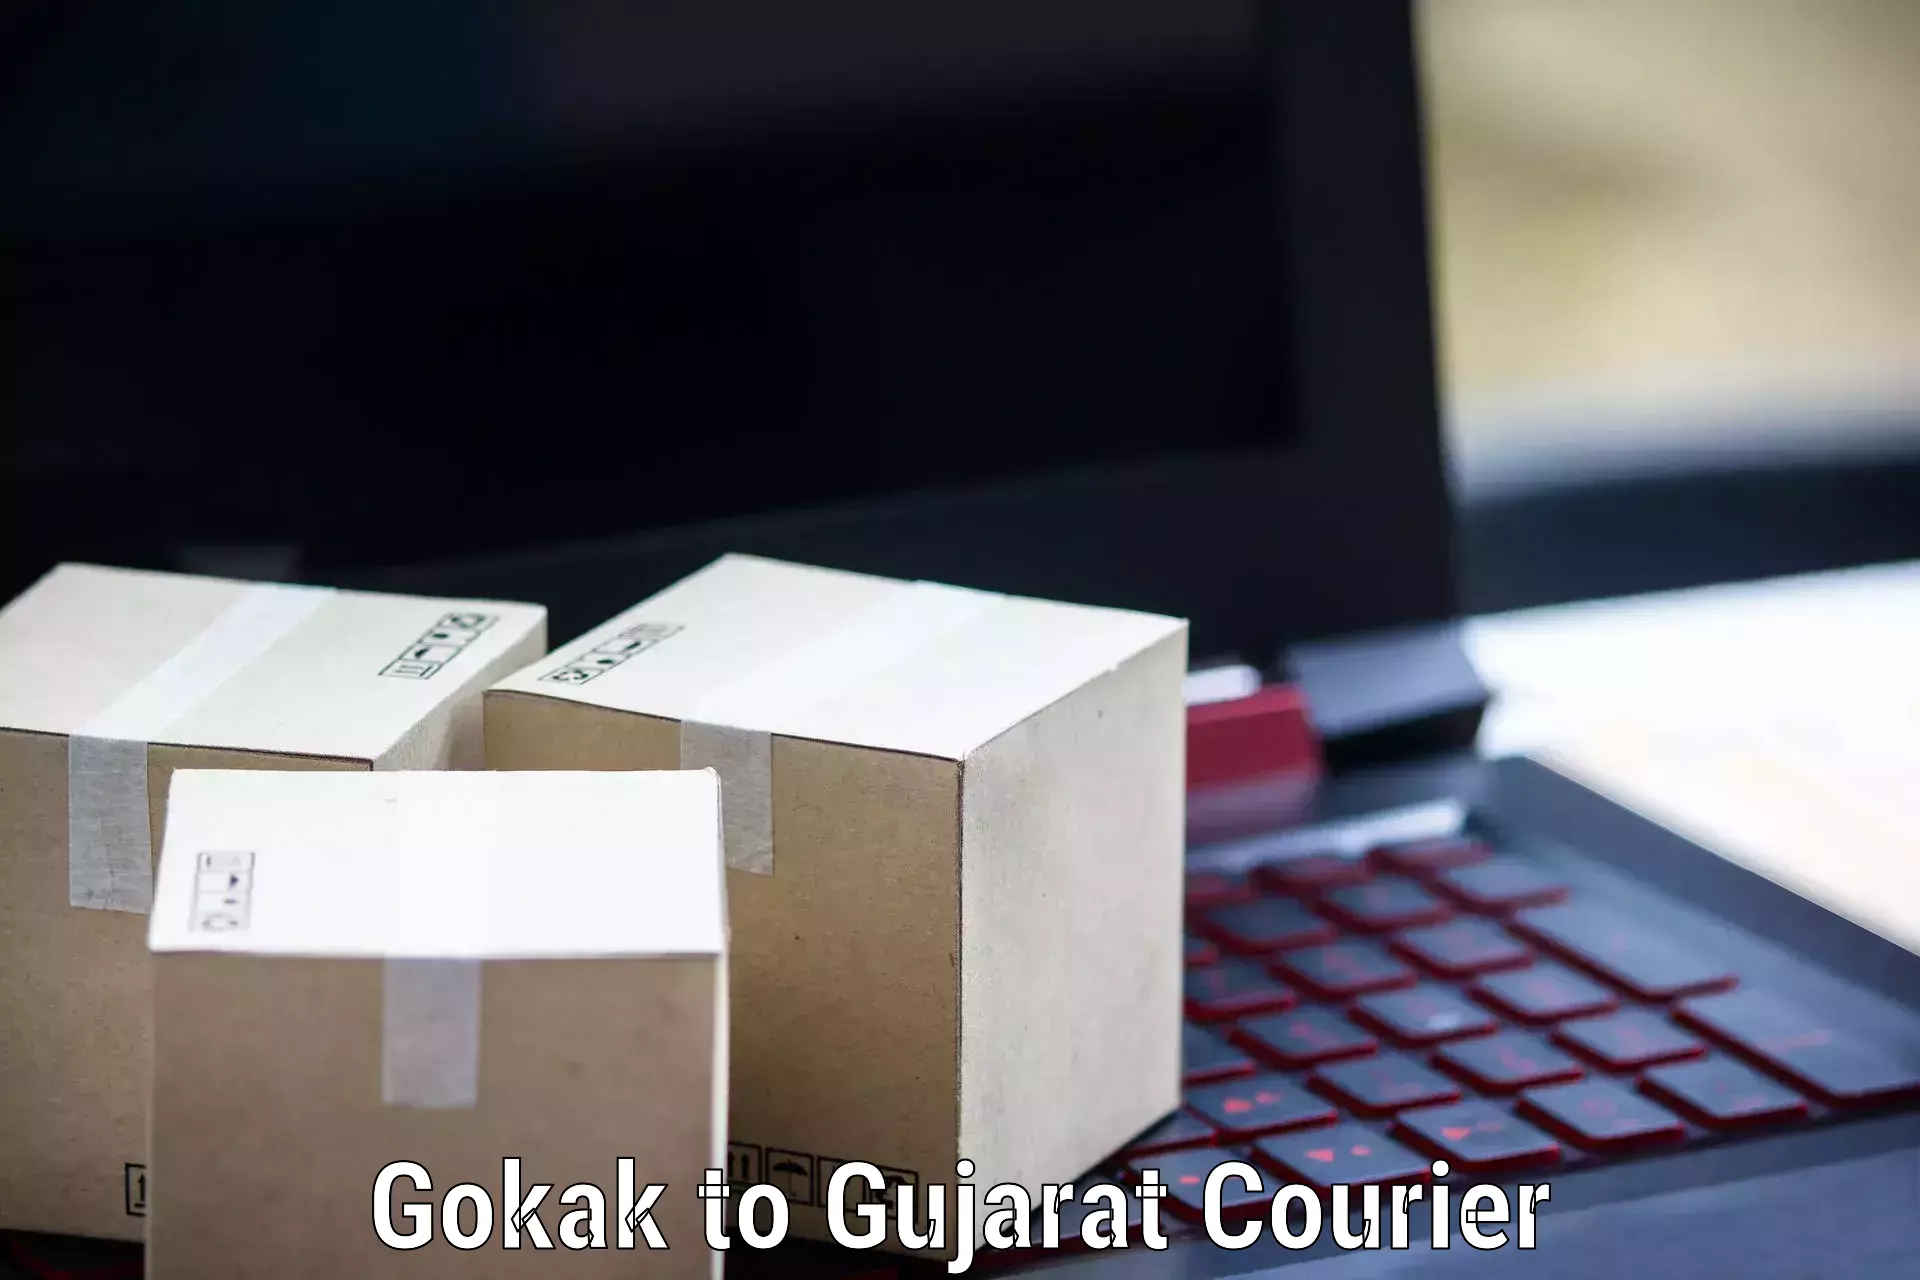 Global shipping networks in Gokak to IIT Gandhi Nagar